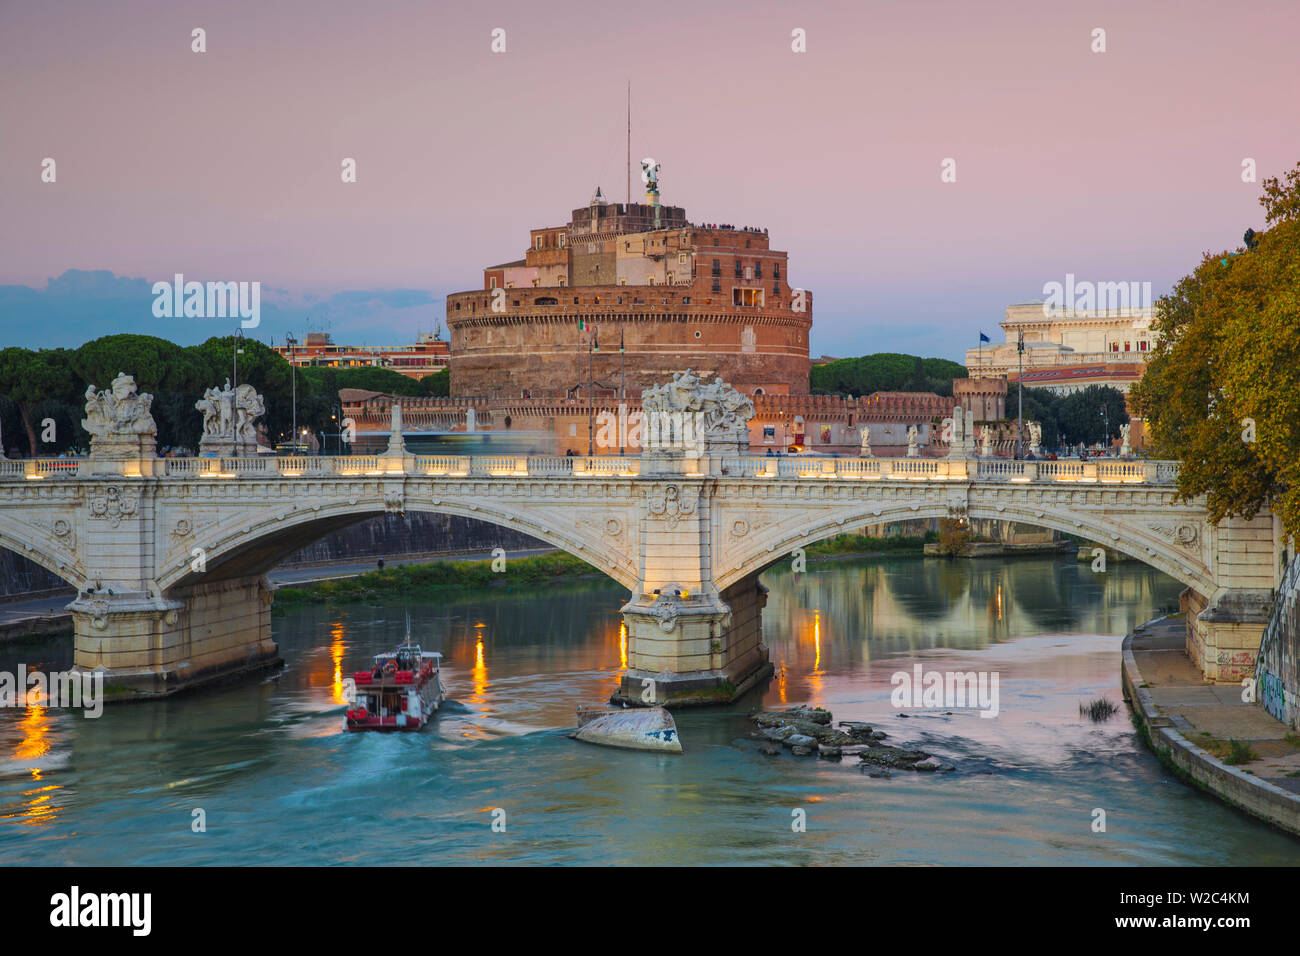 Italy, Lazio, Rome, View of  Vittorio Emanuele II Bridge and Castle St. Angelo (Hadrian's Mausoleum) Stock Photo